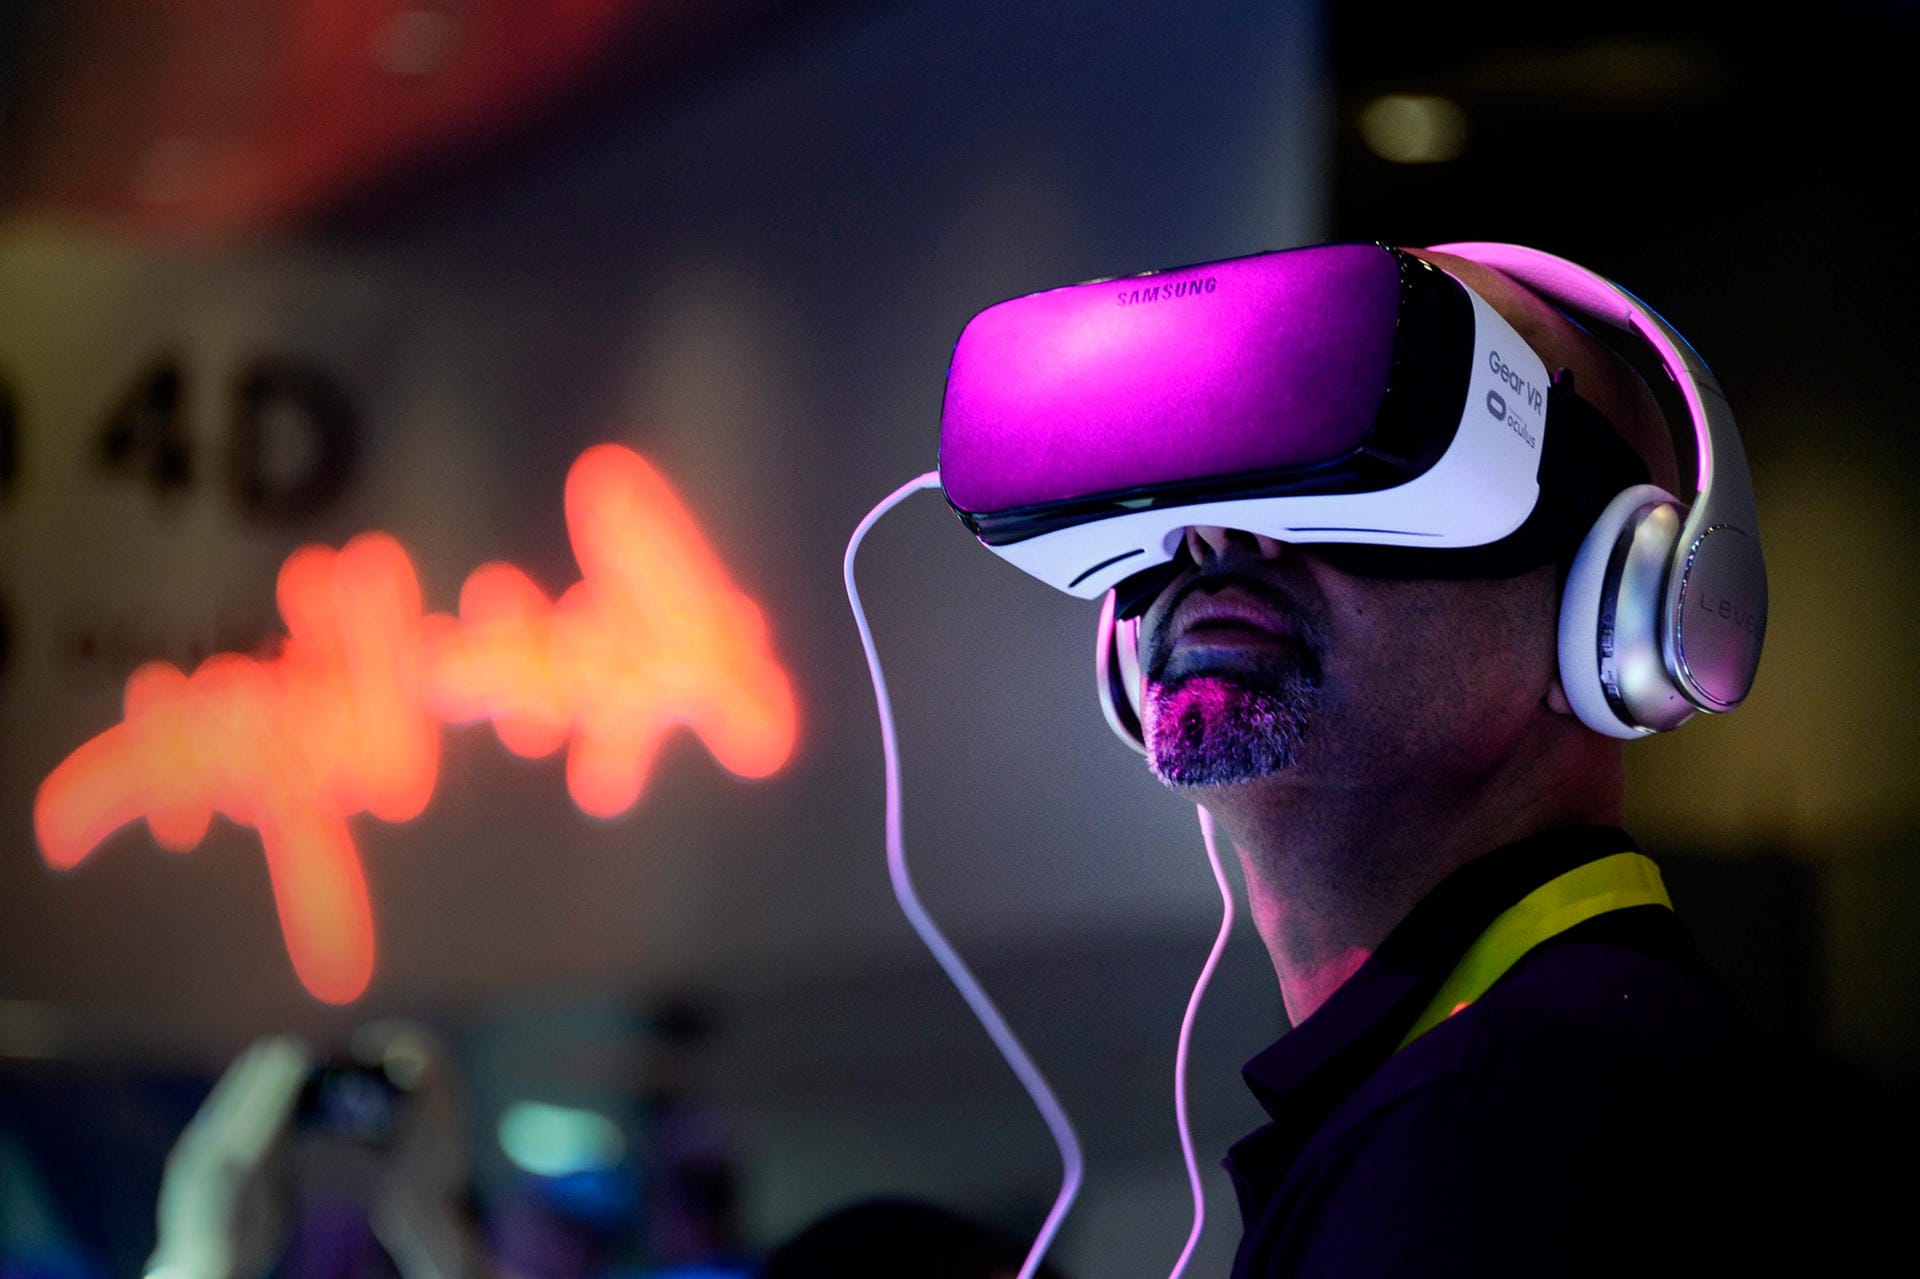 Mit VR-Brillen wie der Samsung Gear VR kann man in virtuelle Welten abtauchen.